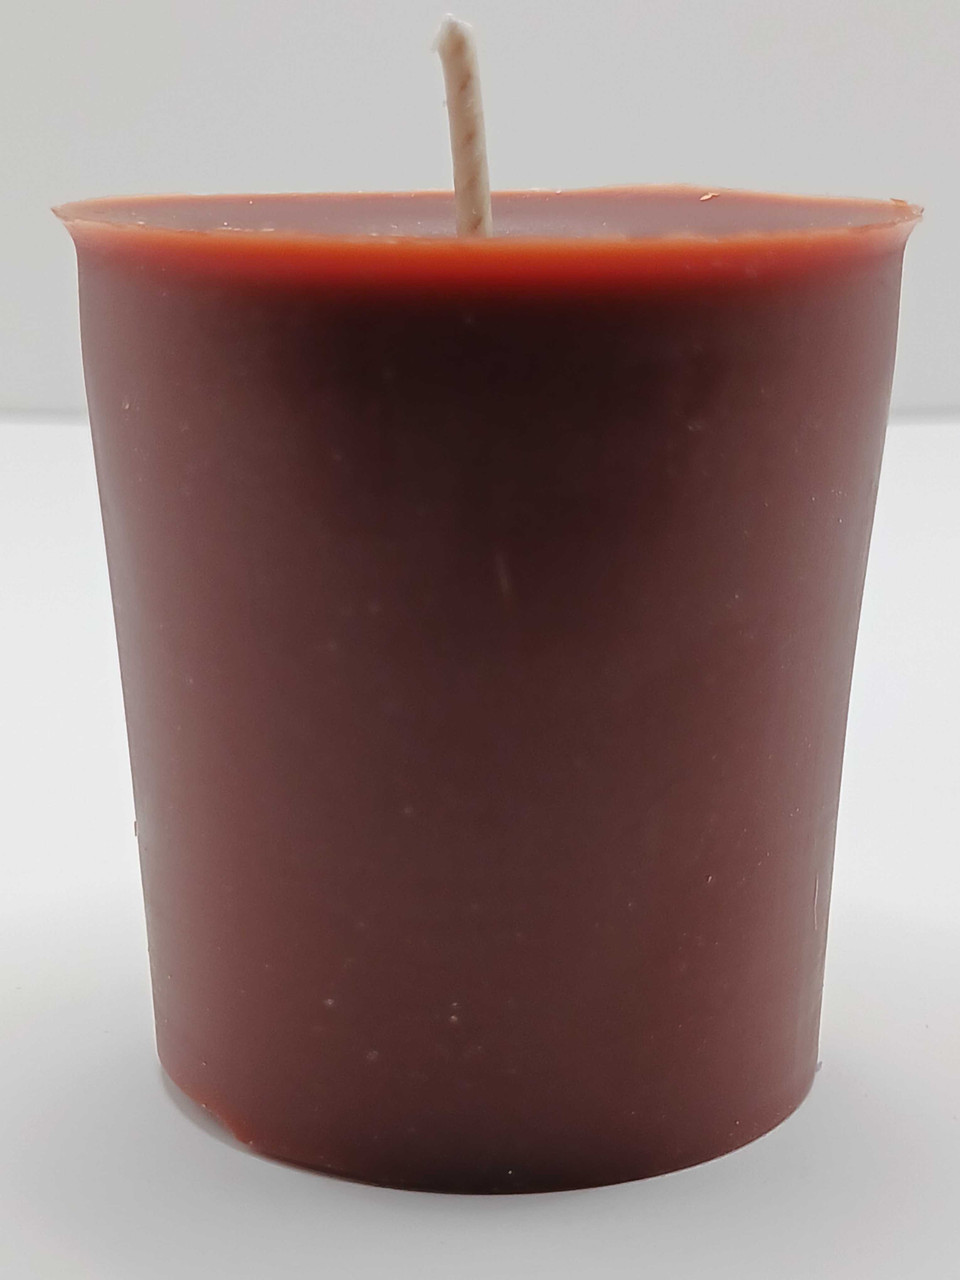 Frankincense & Myrrh - Soy Wax Candle